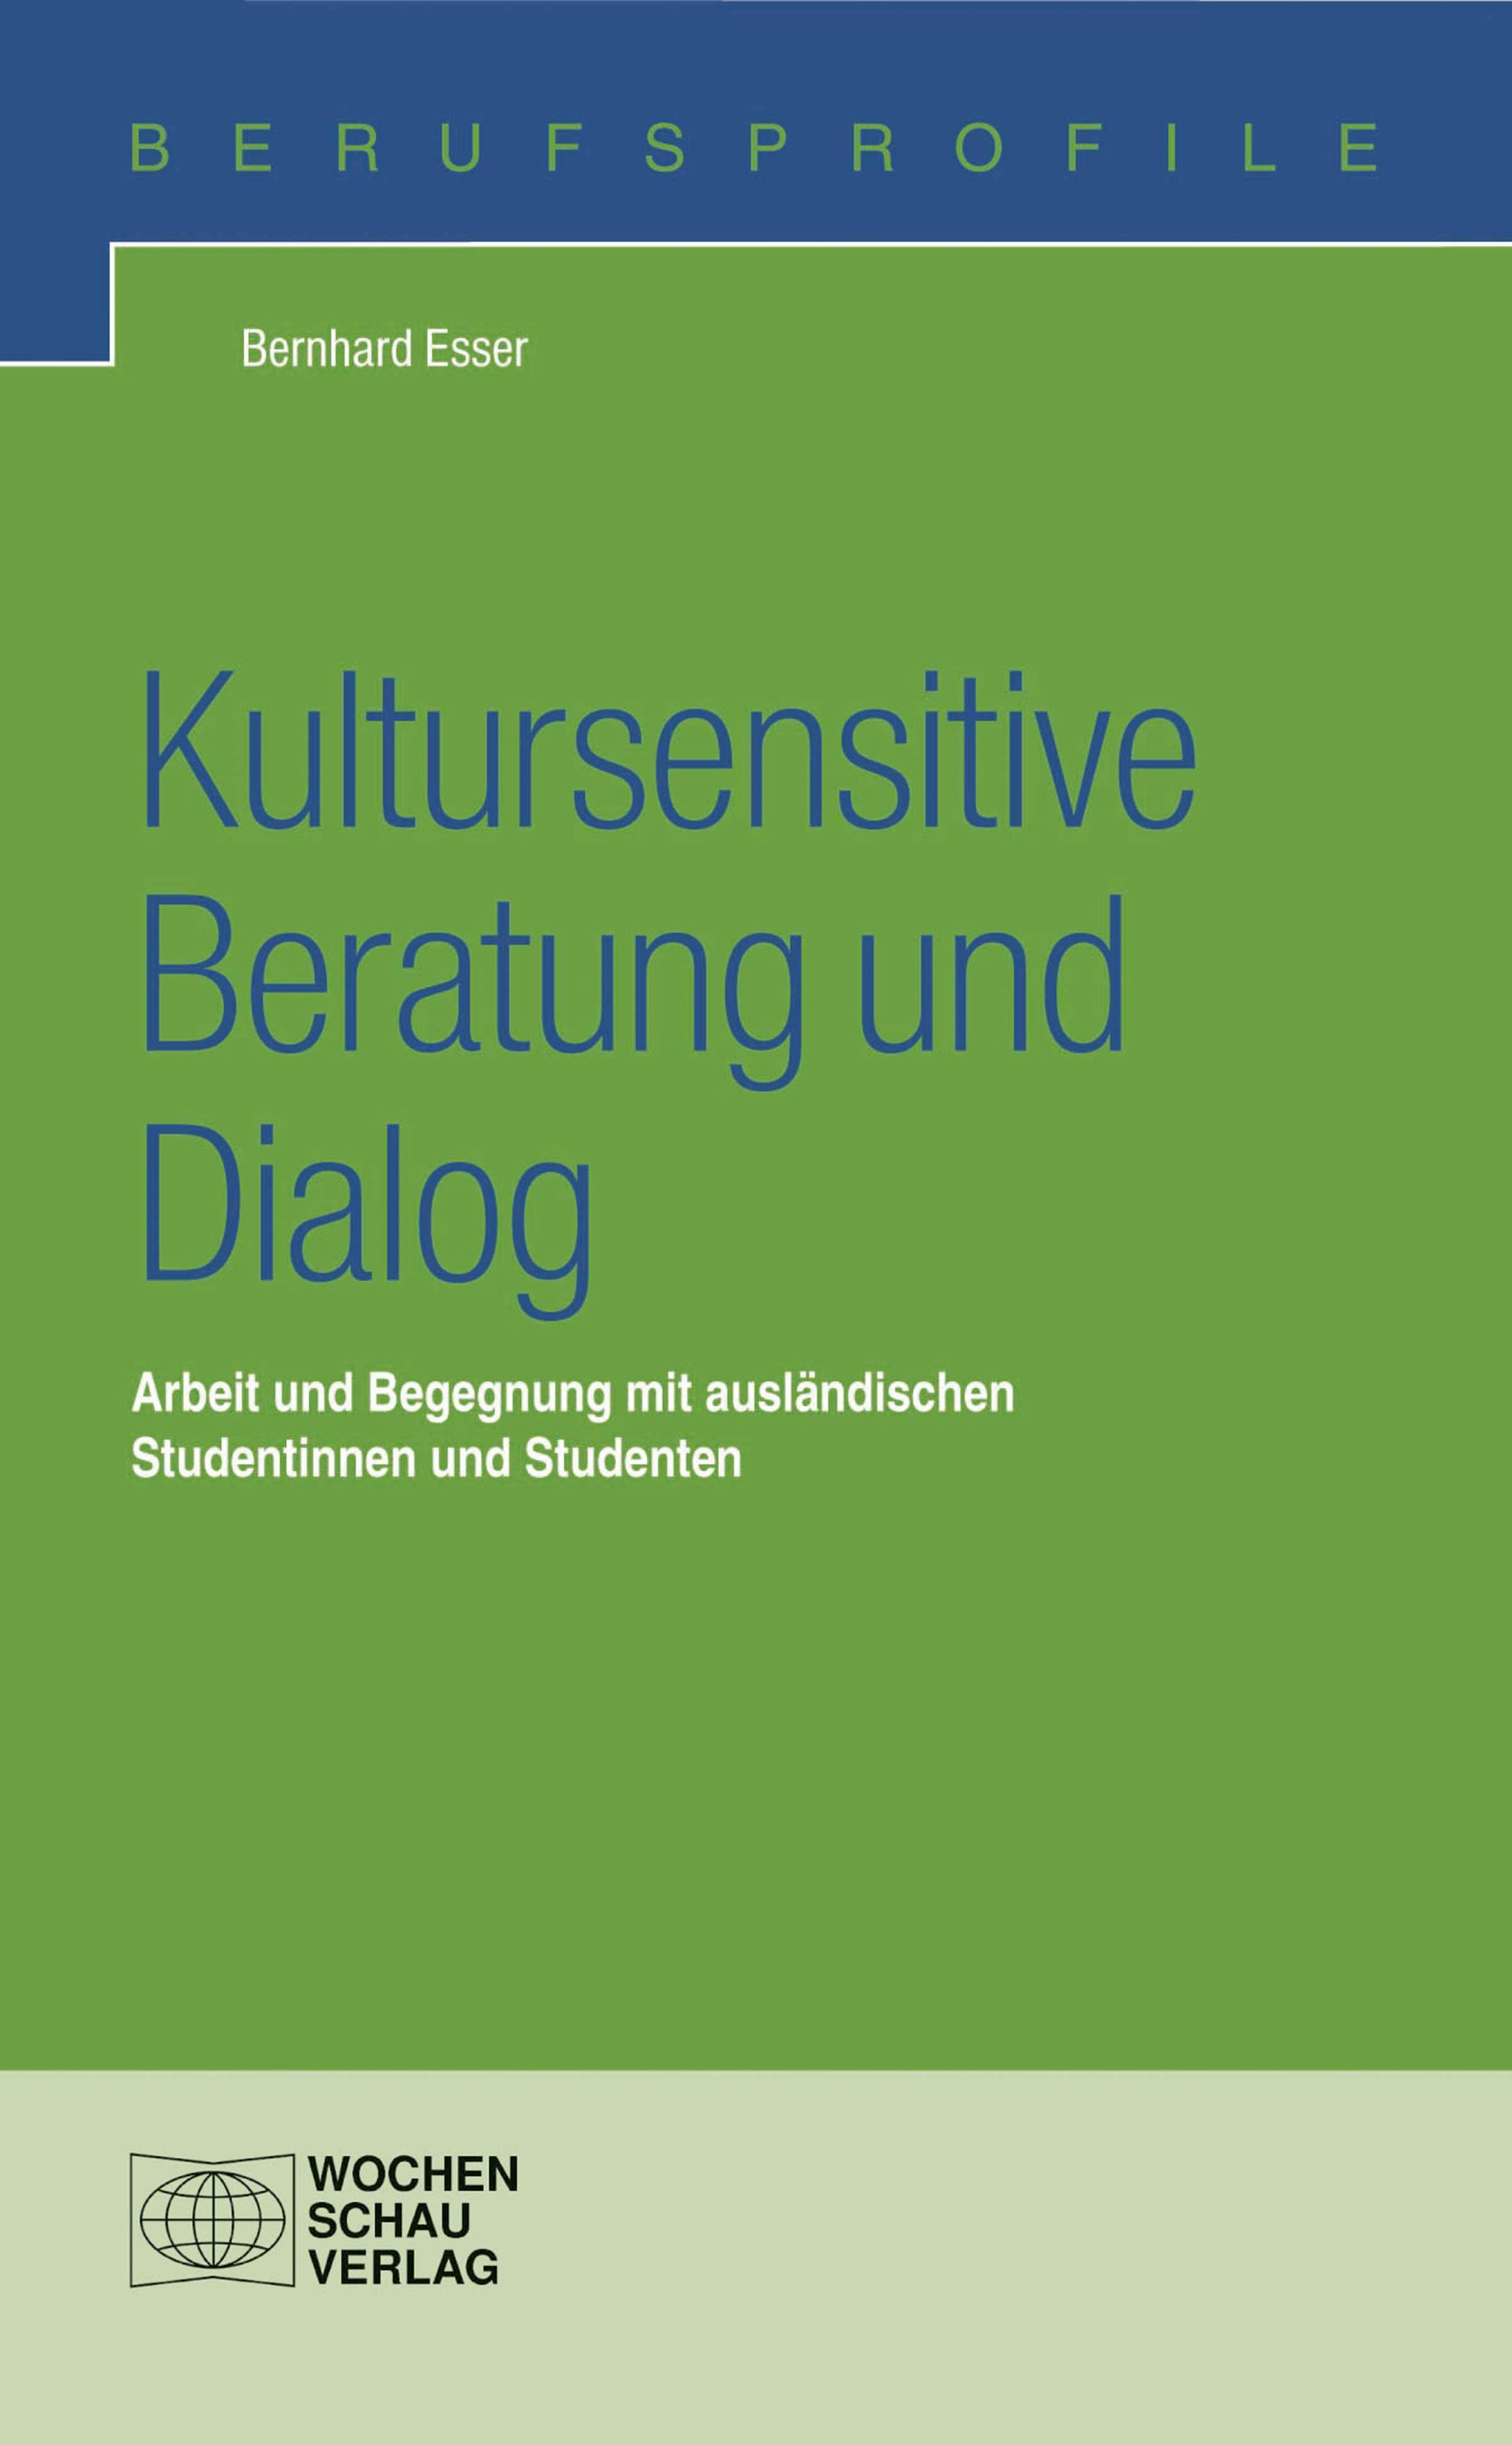 Kultursensitive Beratung und Dialog: Arbeit und Begegnung mit ausländischen Studentinnen und Studenten - Bernhard Esser